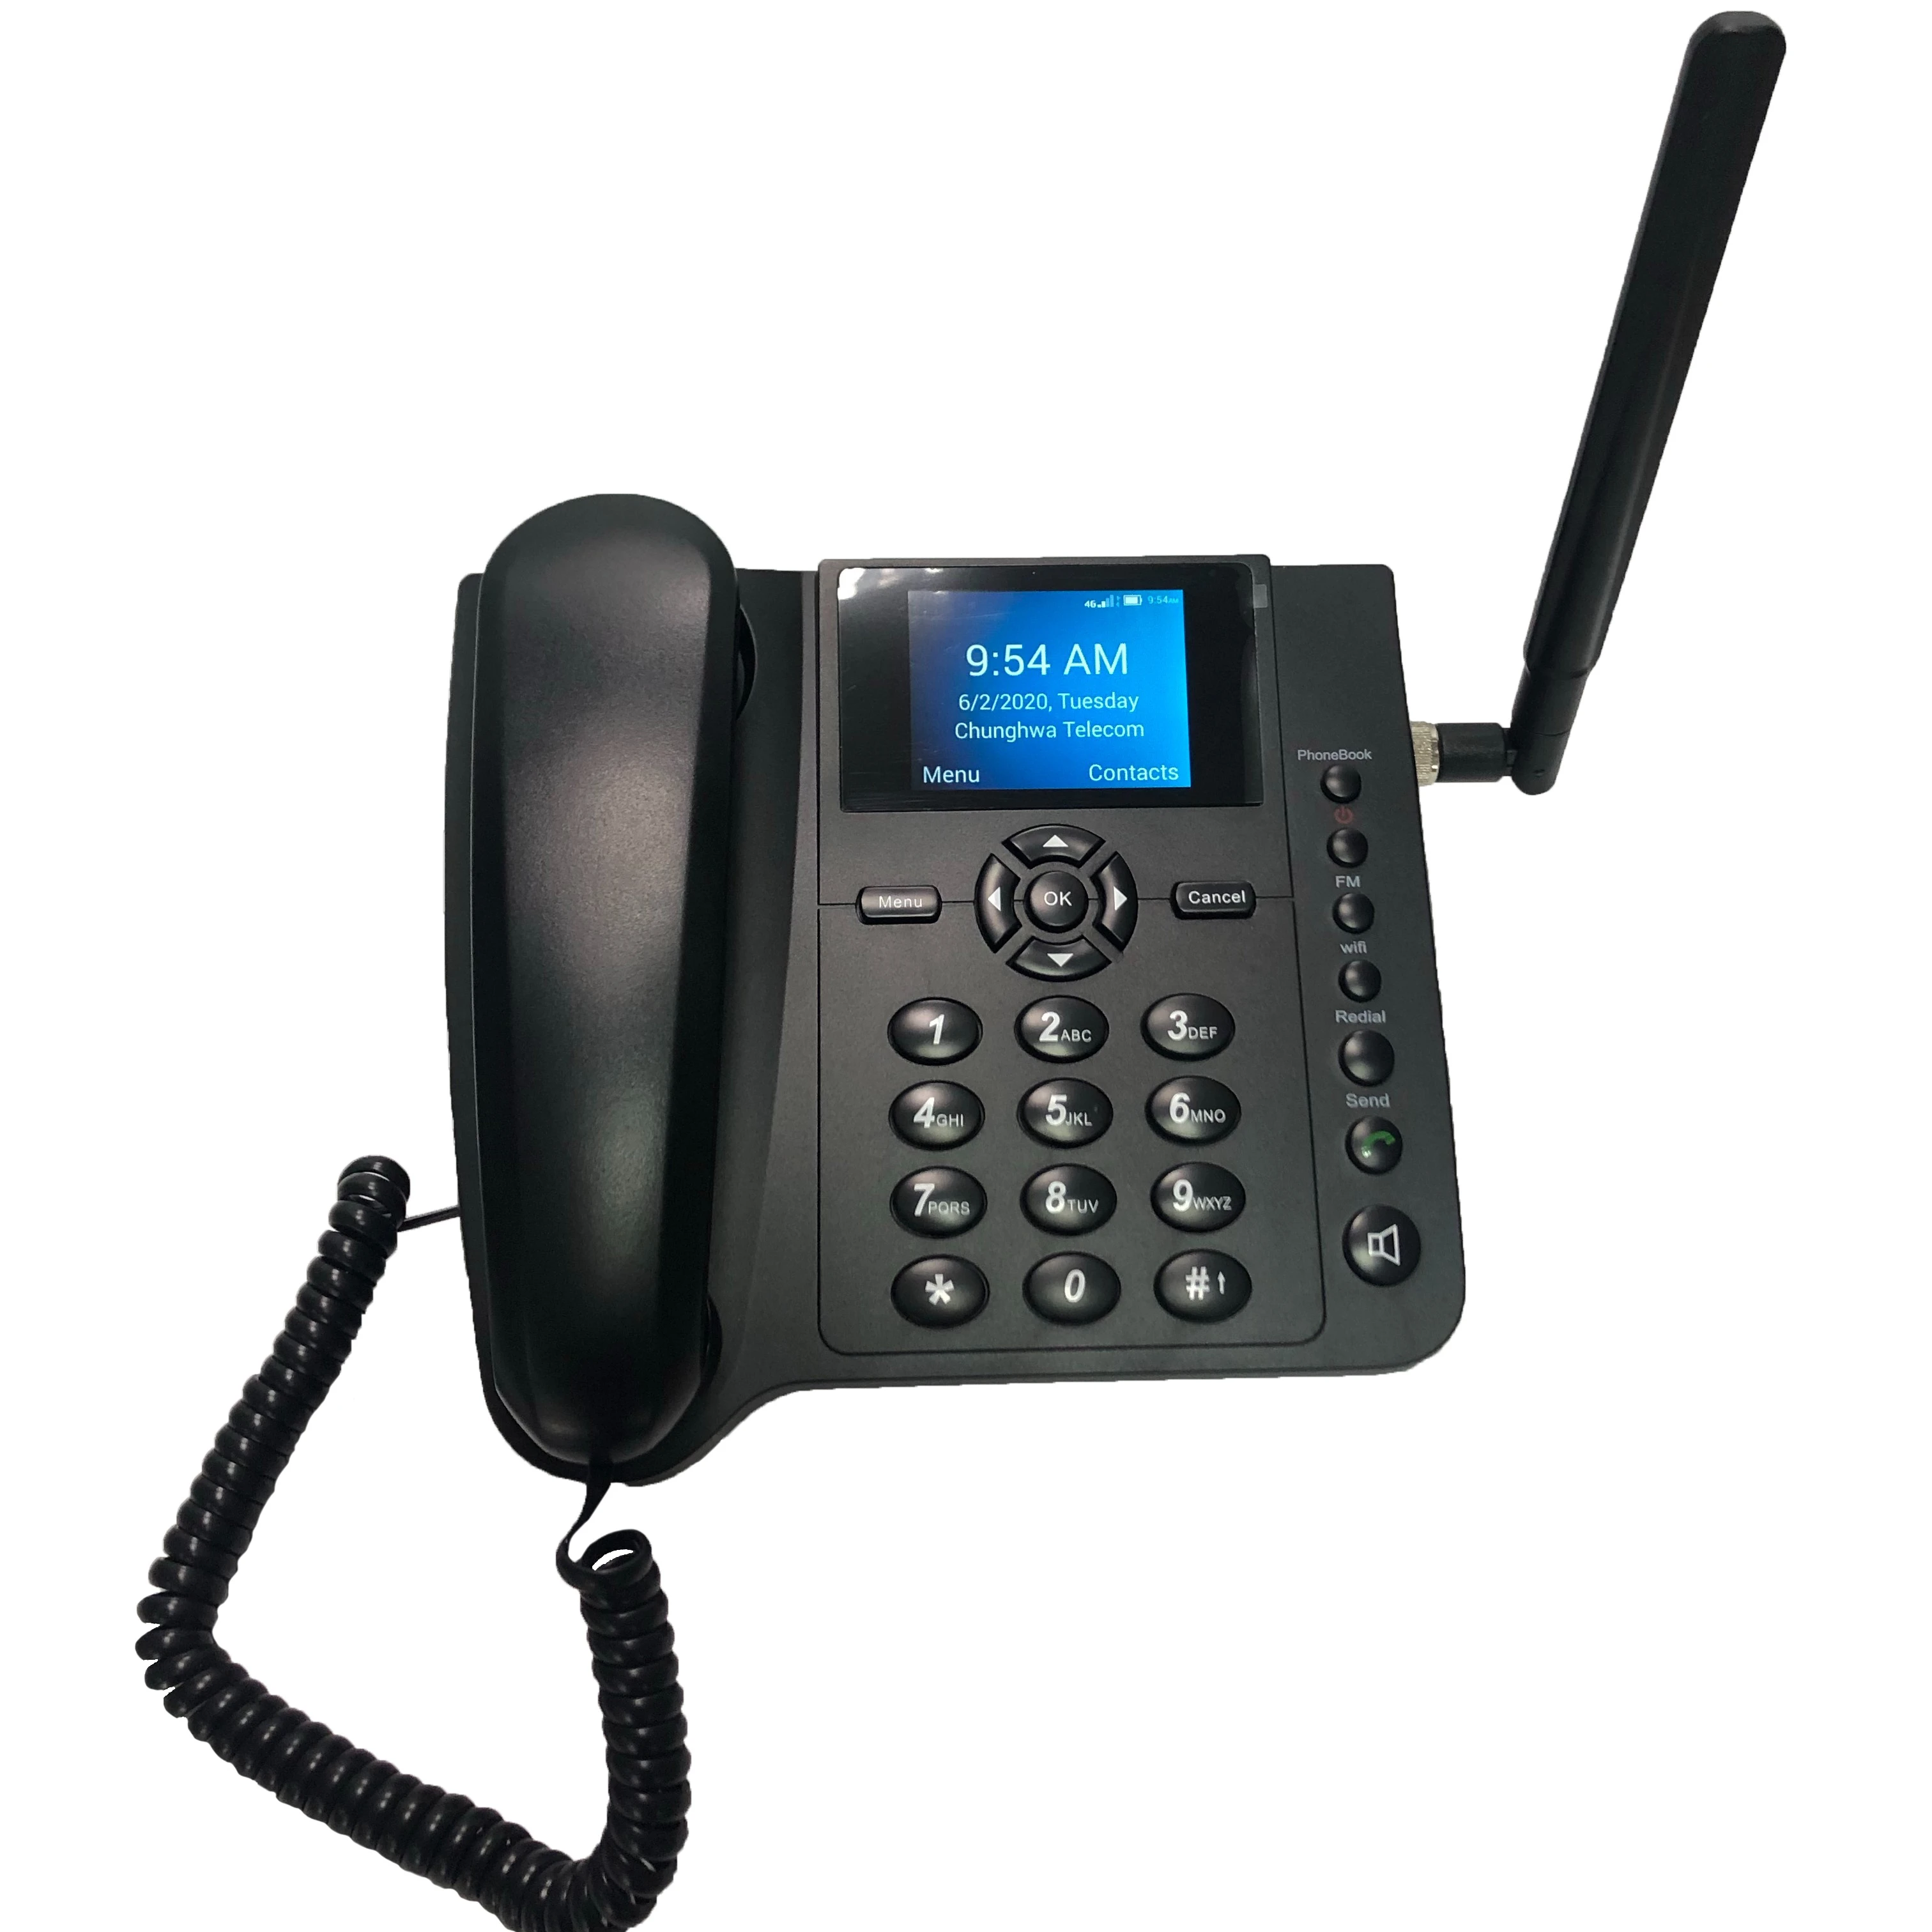 FWP LS-960D 4 аппарат не привязан к оператору сотовой связи стационарный беспроволочный телефон с VoLTE, BT и точку доступа Wi-Fi